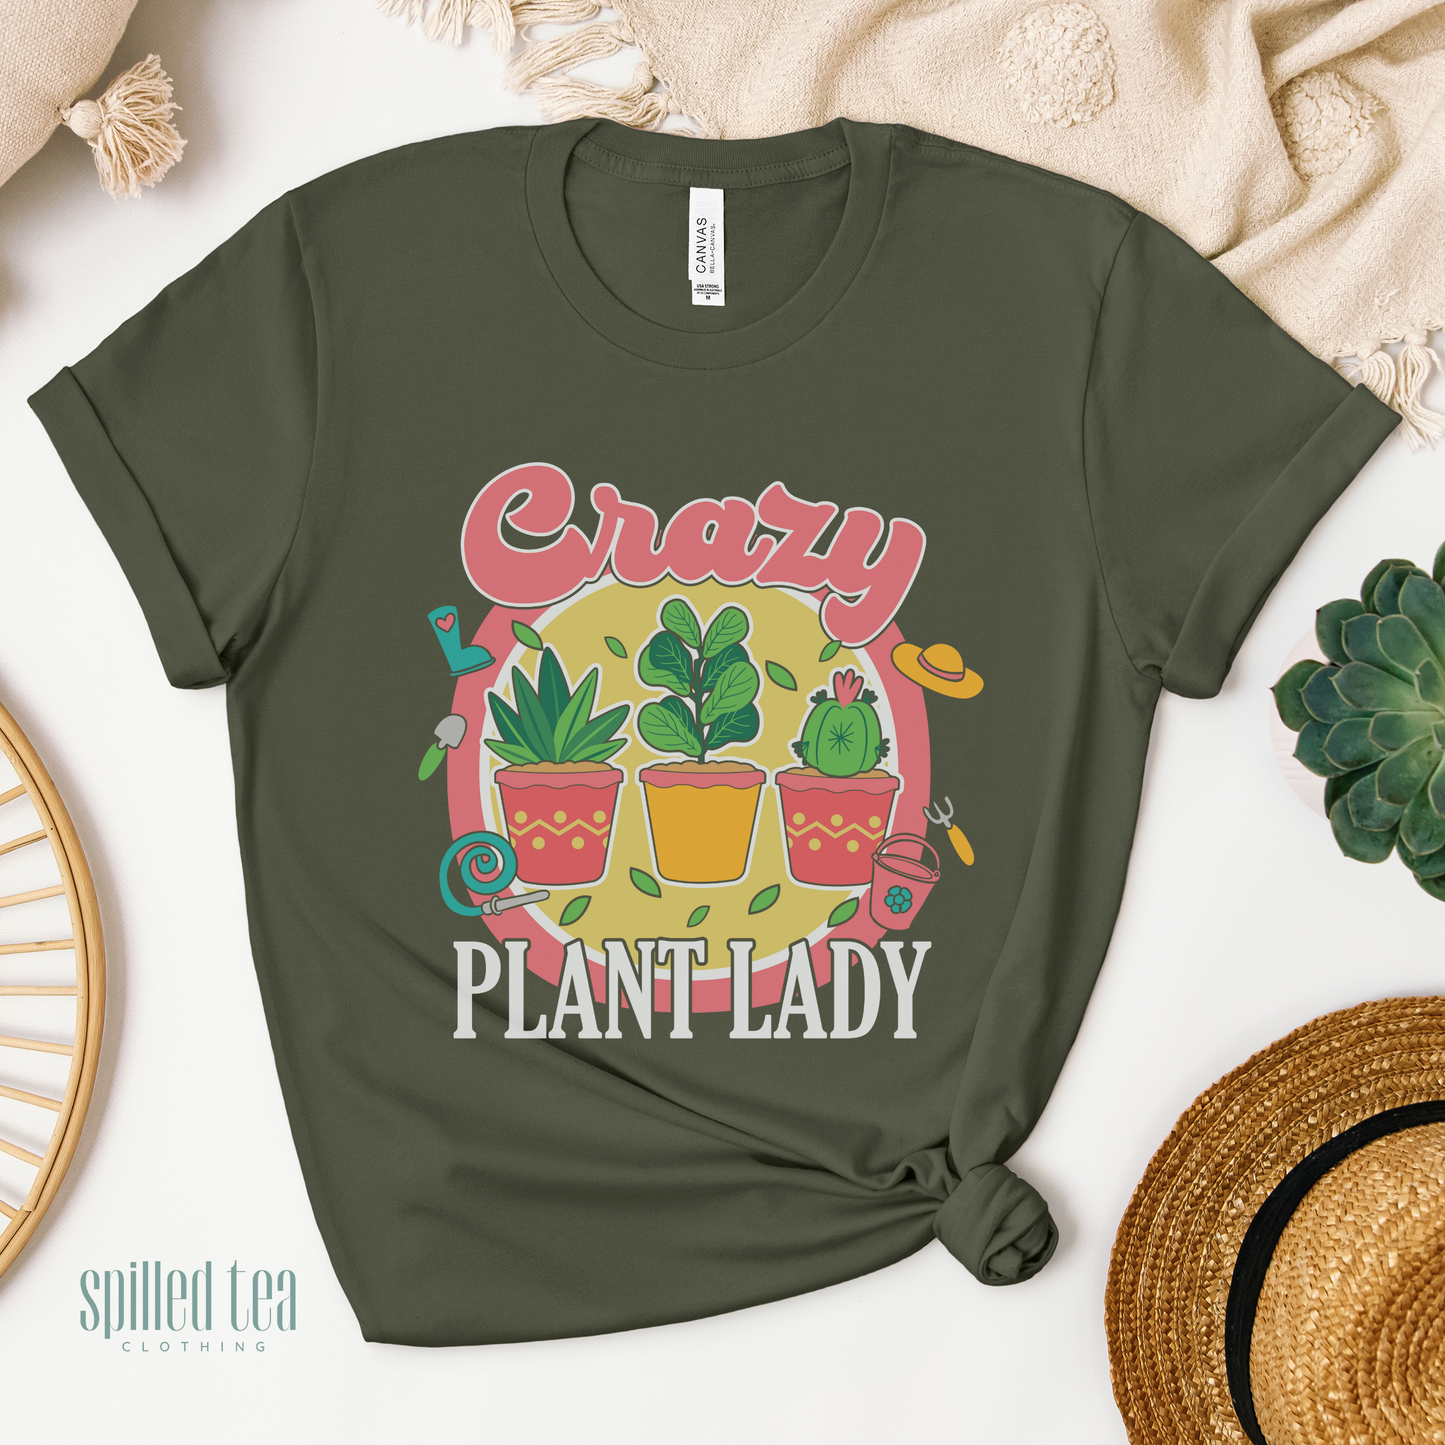 Crazy Plant Lady T-Shirt